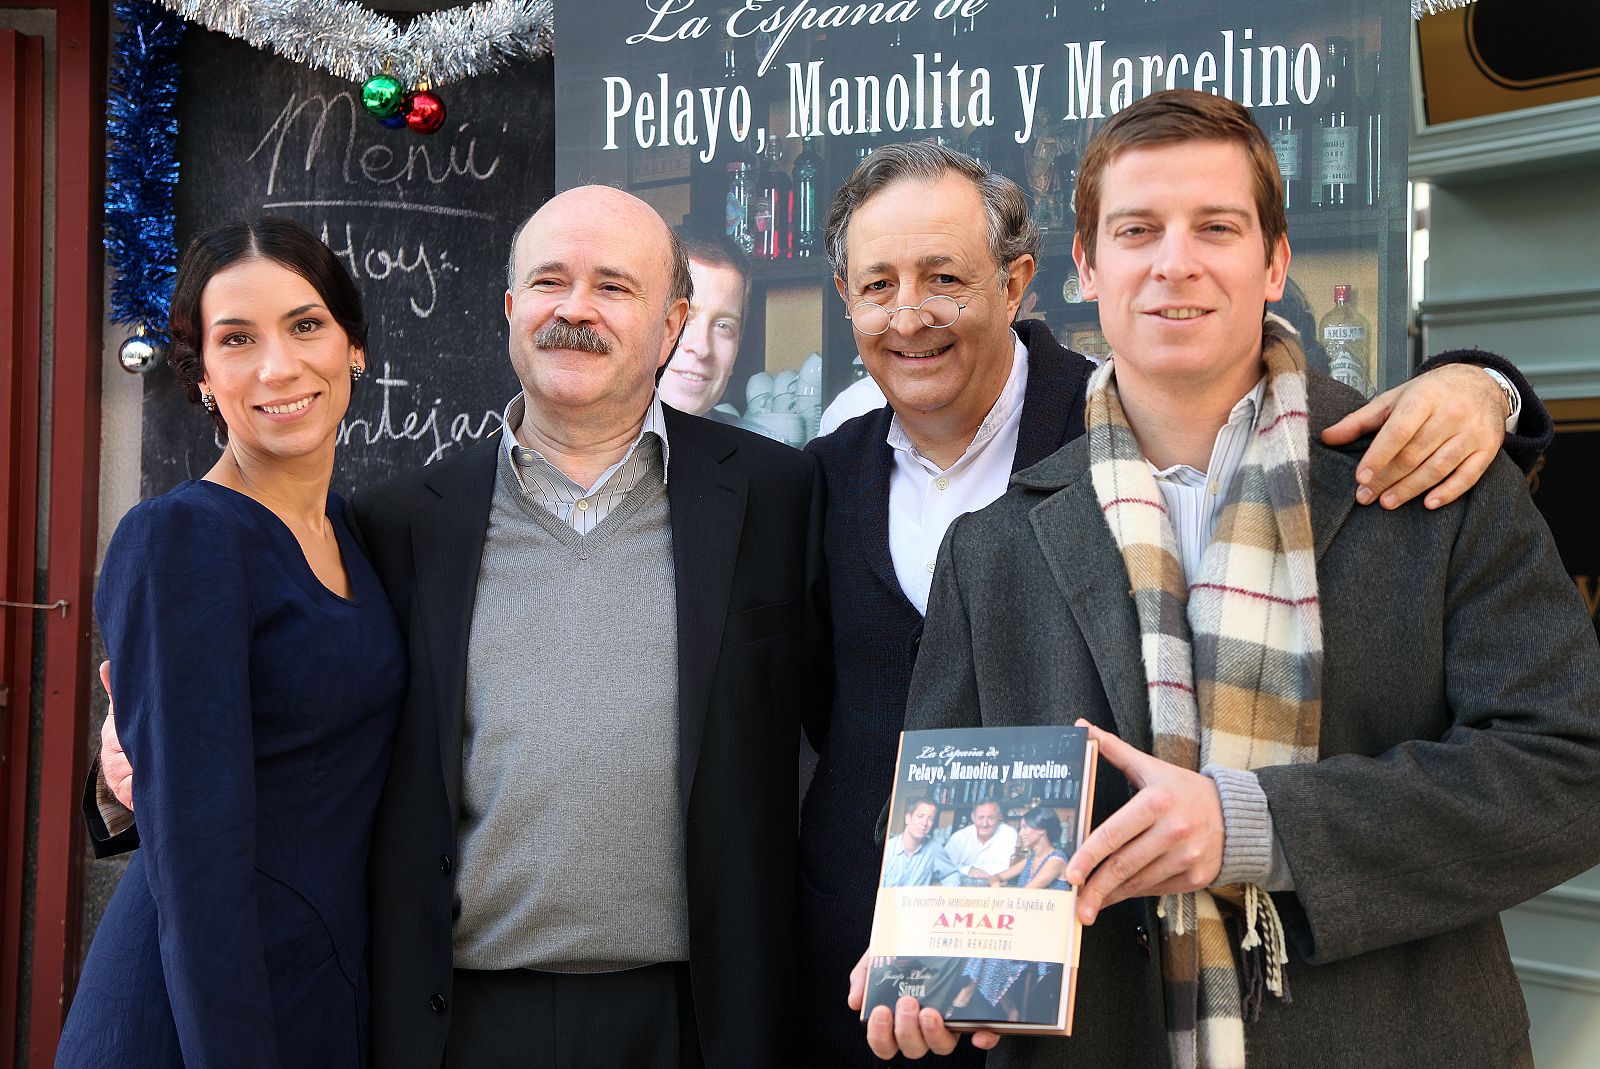 La España de Pelayo, Manolita y Marcelino